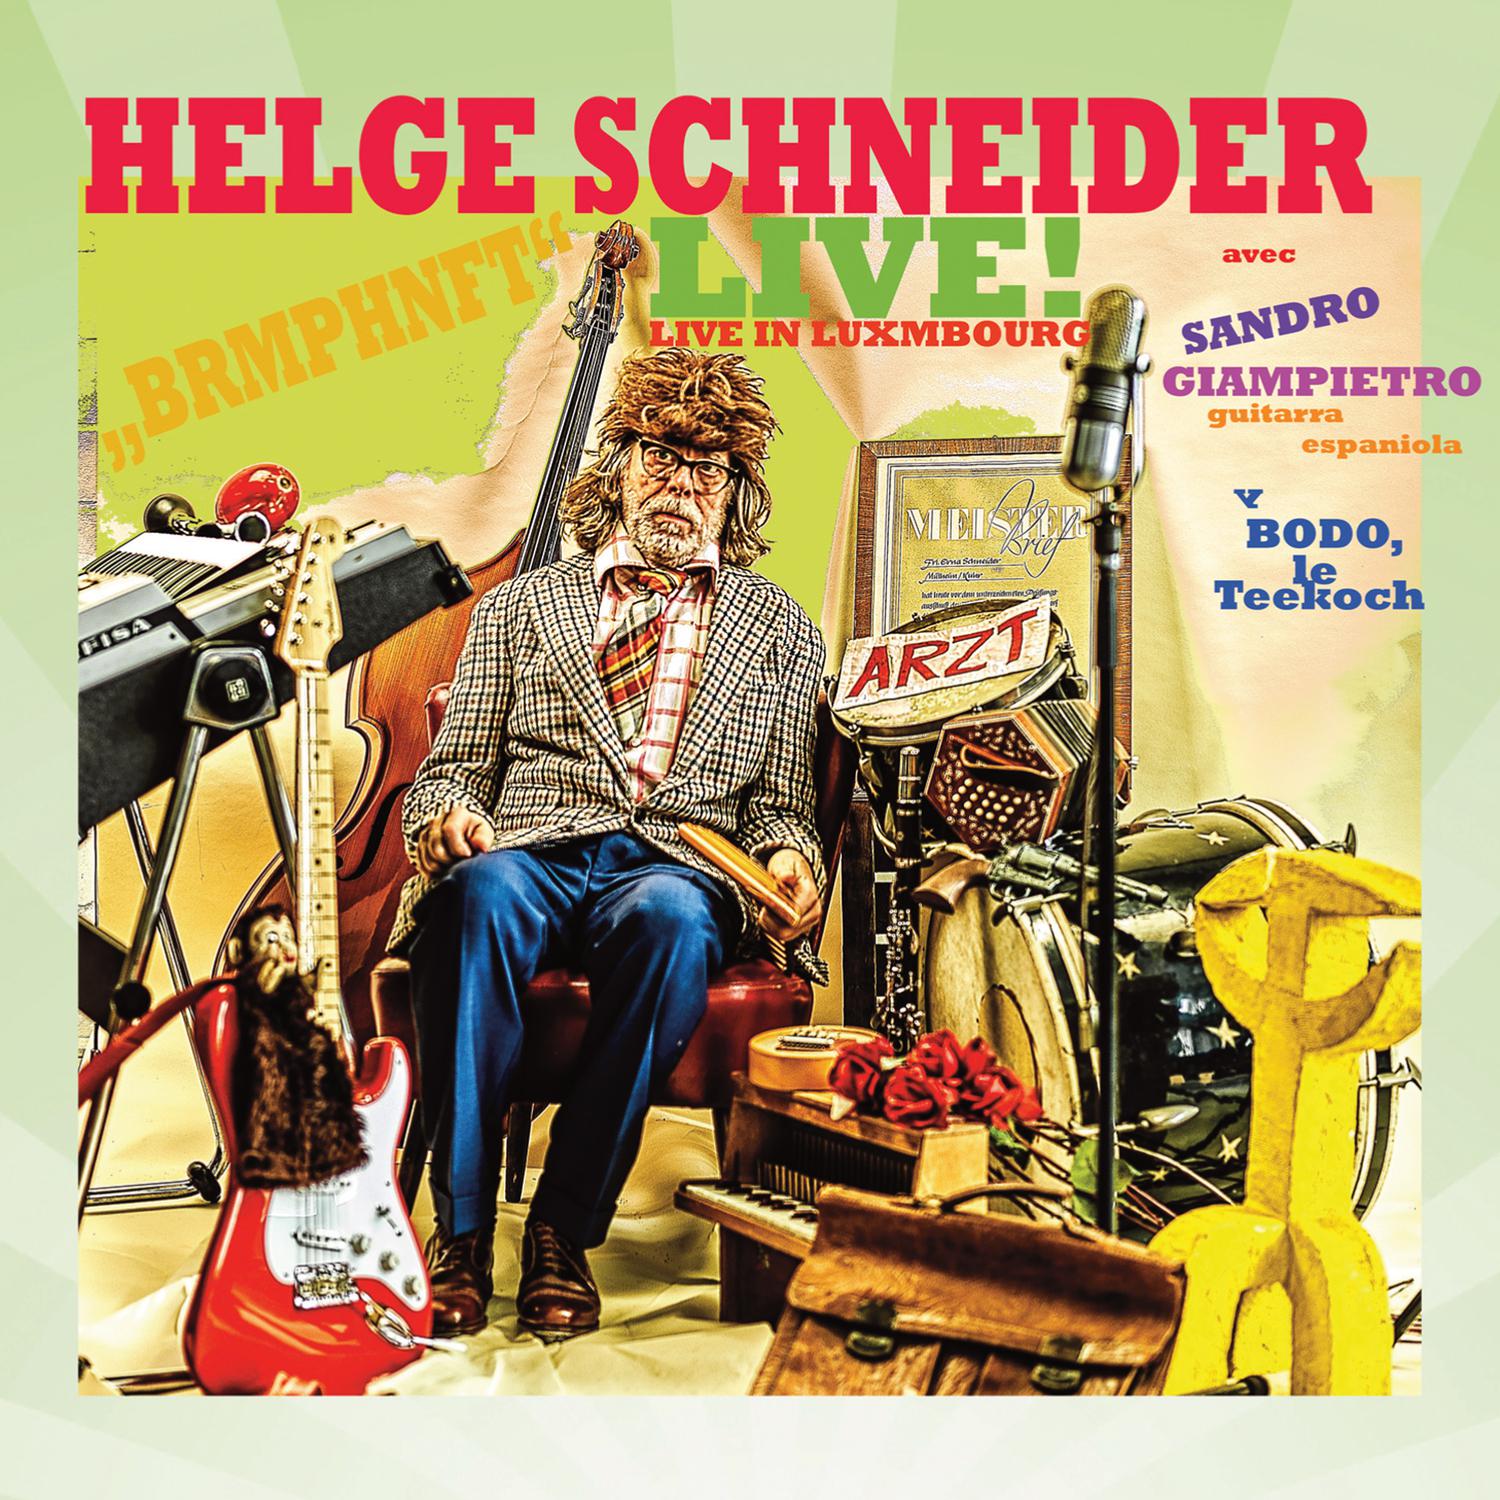 Helge Schneider - Baby Baby unter der Decke (Live)